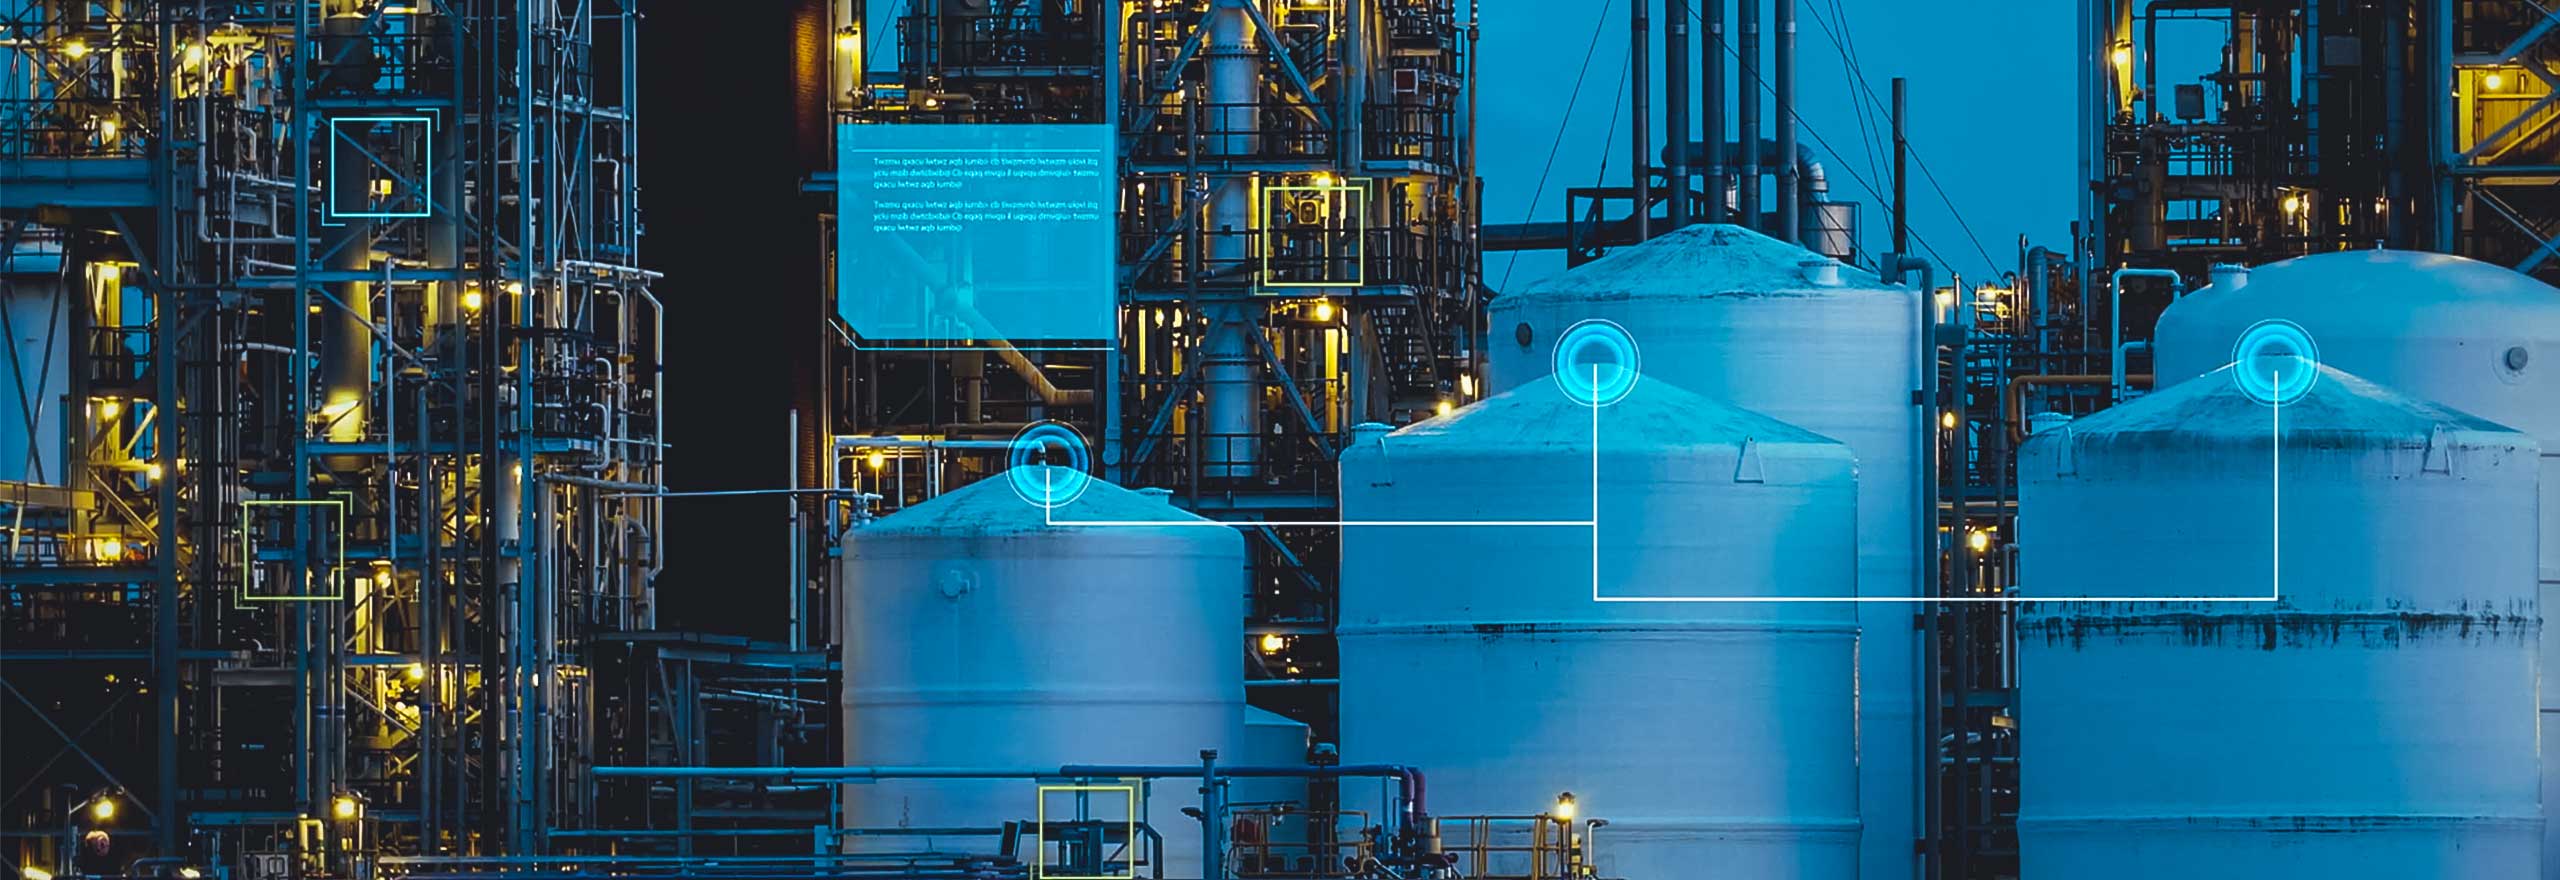  Uma instalação industrial à noite. A imagem é sobreposta com elementos digitais que representam dados operacionais